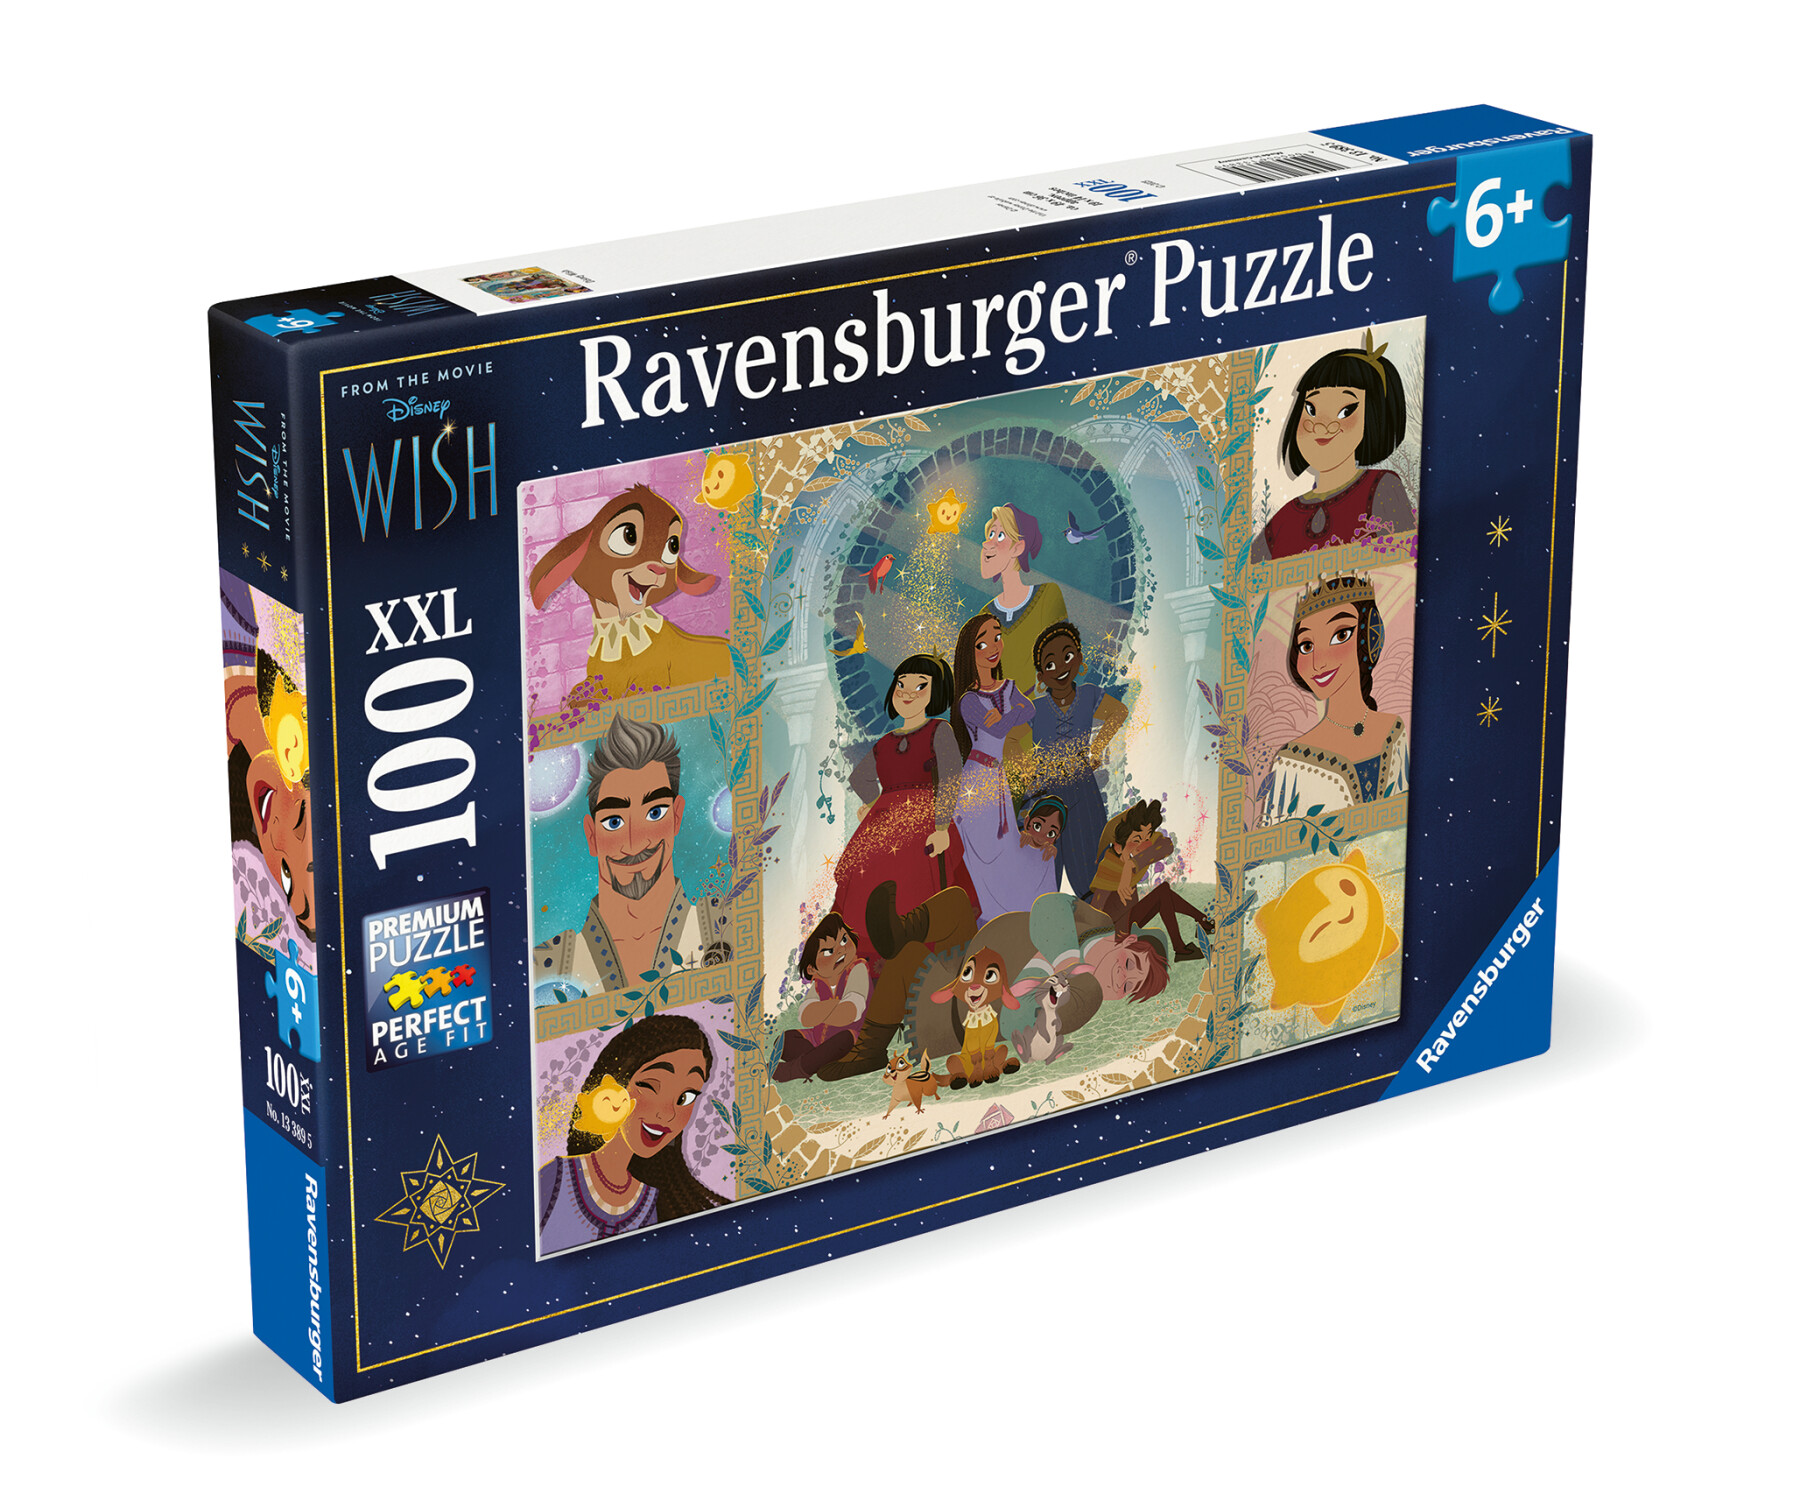 Ravensburger - puzzle wish 100 pezzi xxl, età raccomandata 6+ anni - DISNEY PRINCESS, RAVENSBURGER